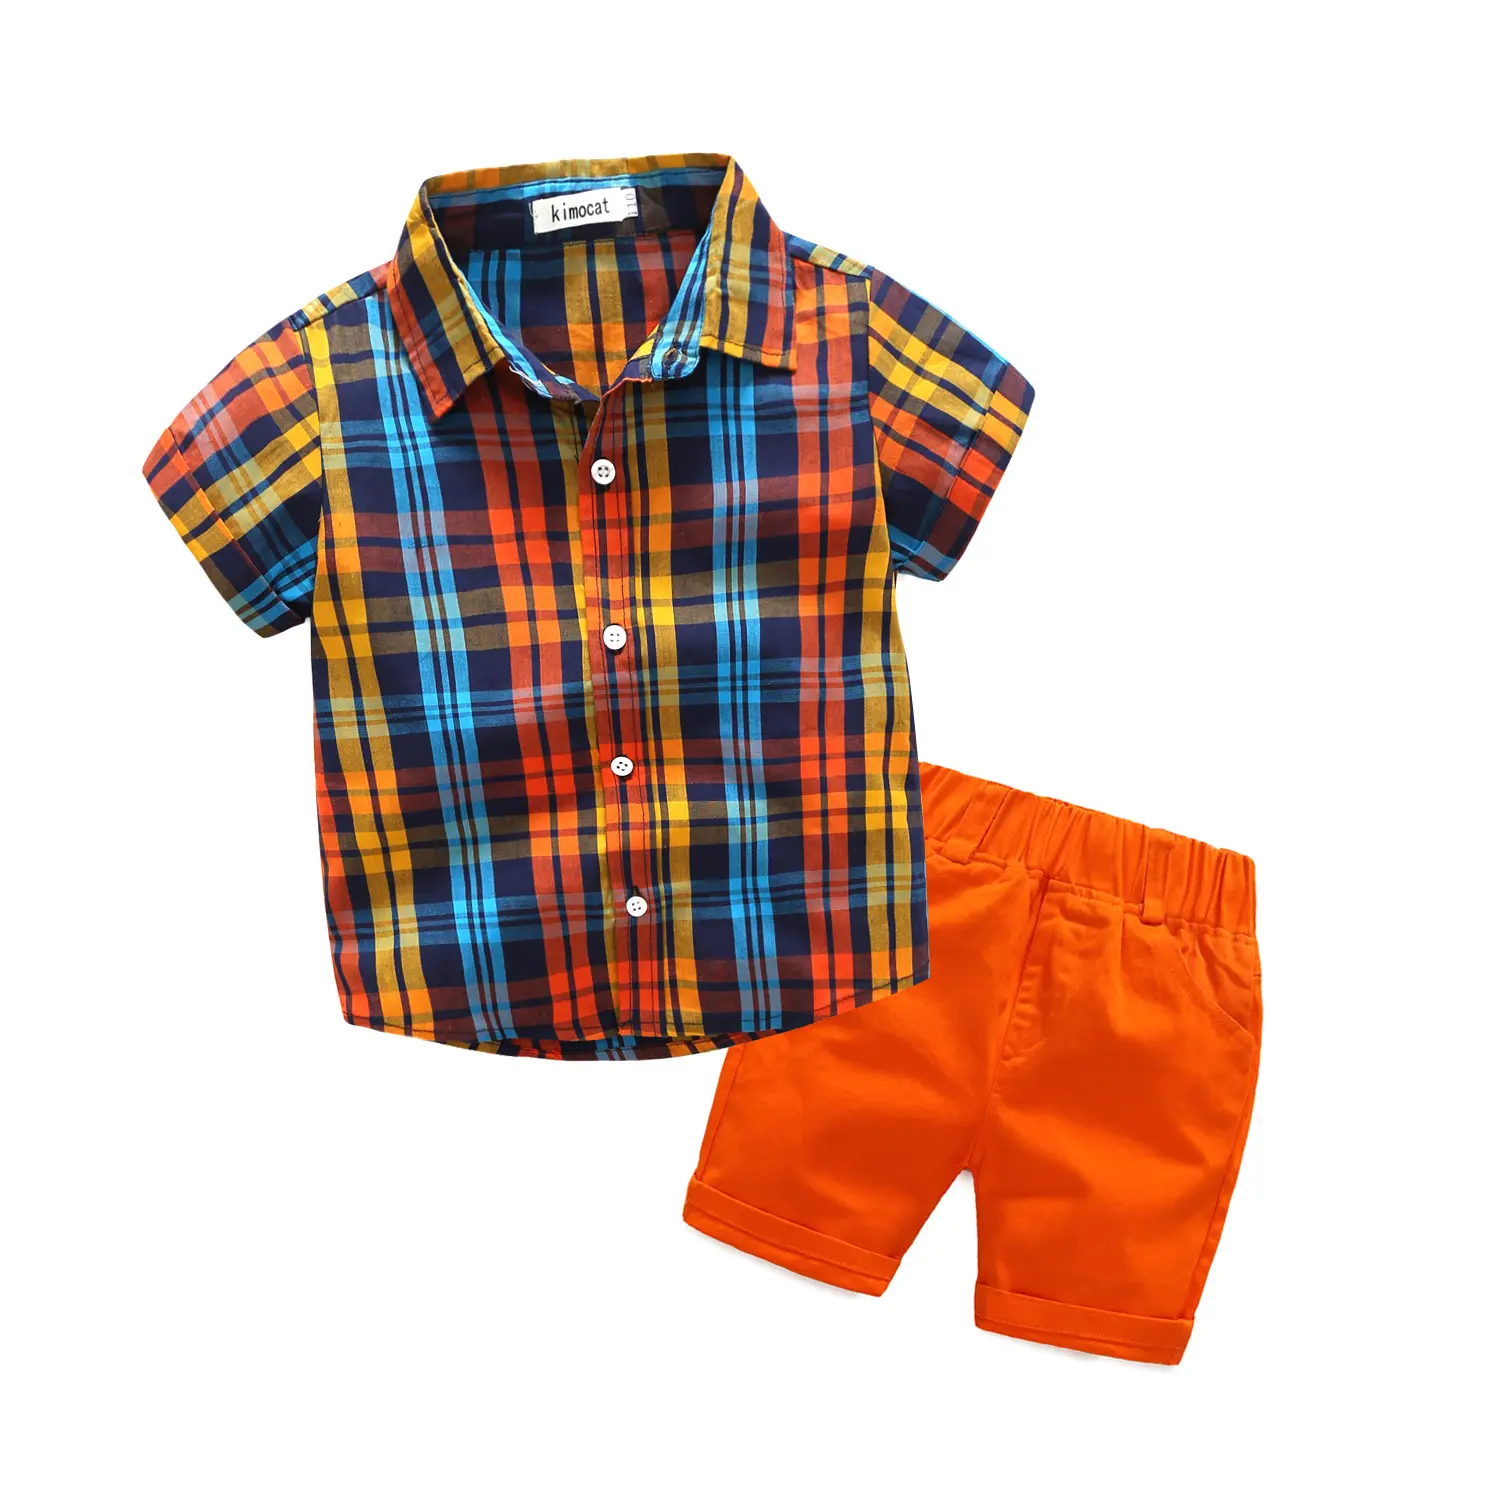 Baju Kotak-kotak Anak-anak Baru Musim Panas Sistem Kuning, Baju Celana Pendek Oranye Segar 2 Potong Setelan Anak Laki-laki Modis Baju Pantai Anak Laki-laki